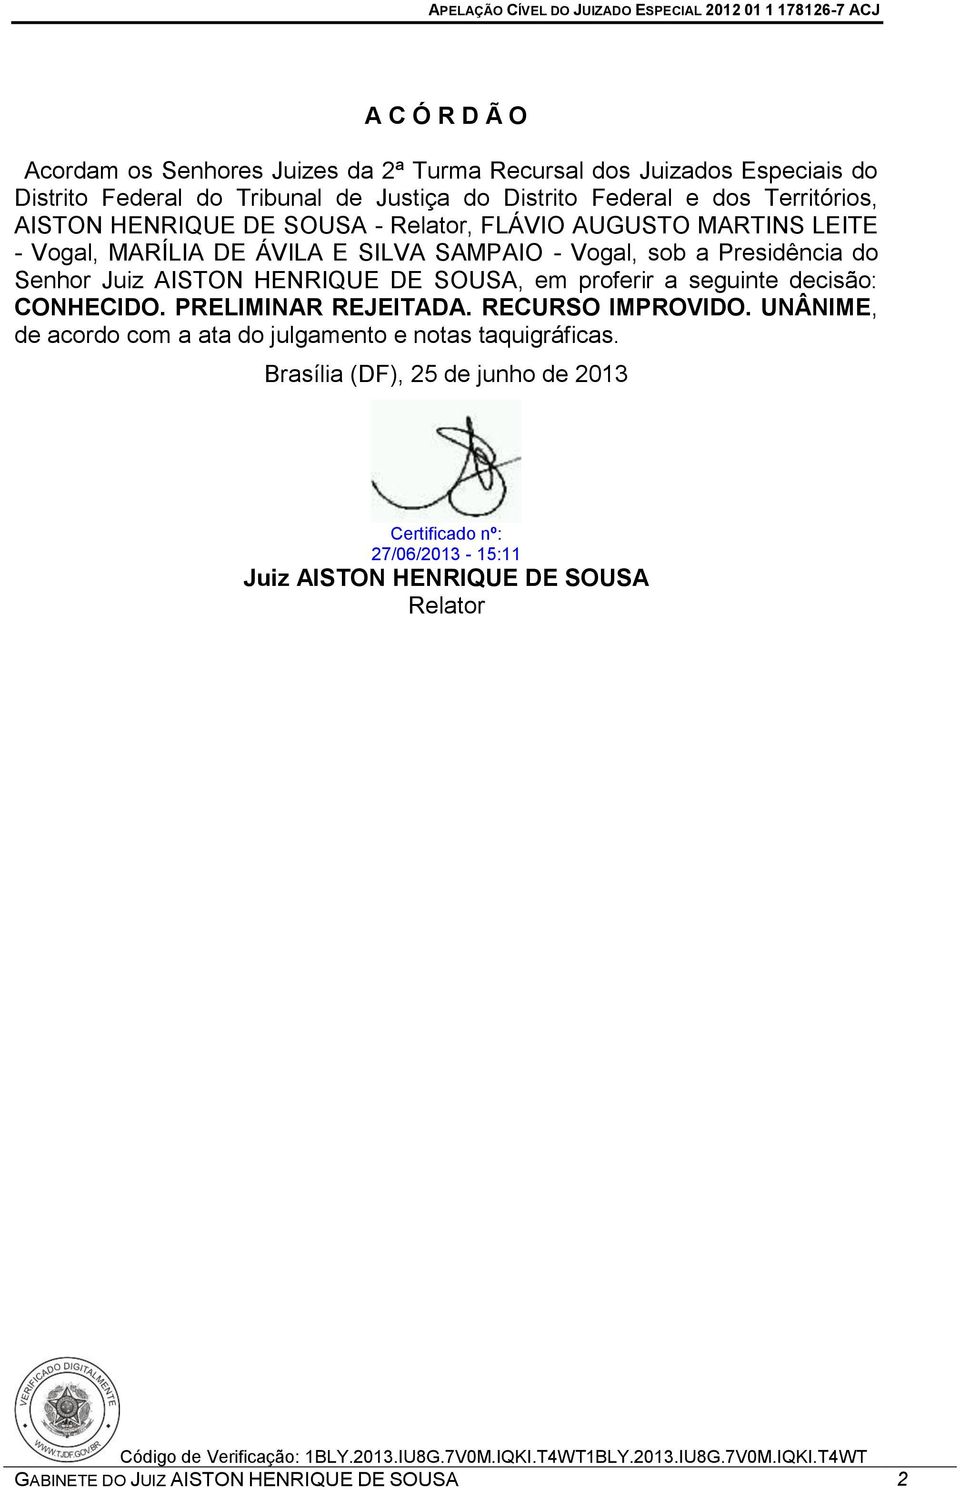 Juiz AISTON HENRIQUE DE SOUSA, em proferir a seguinte decisão: CONHECIDO. PRELIMINAR REJEITADA. RECURSO IMPROVIDO.